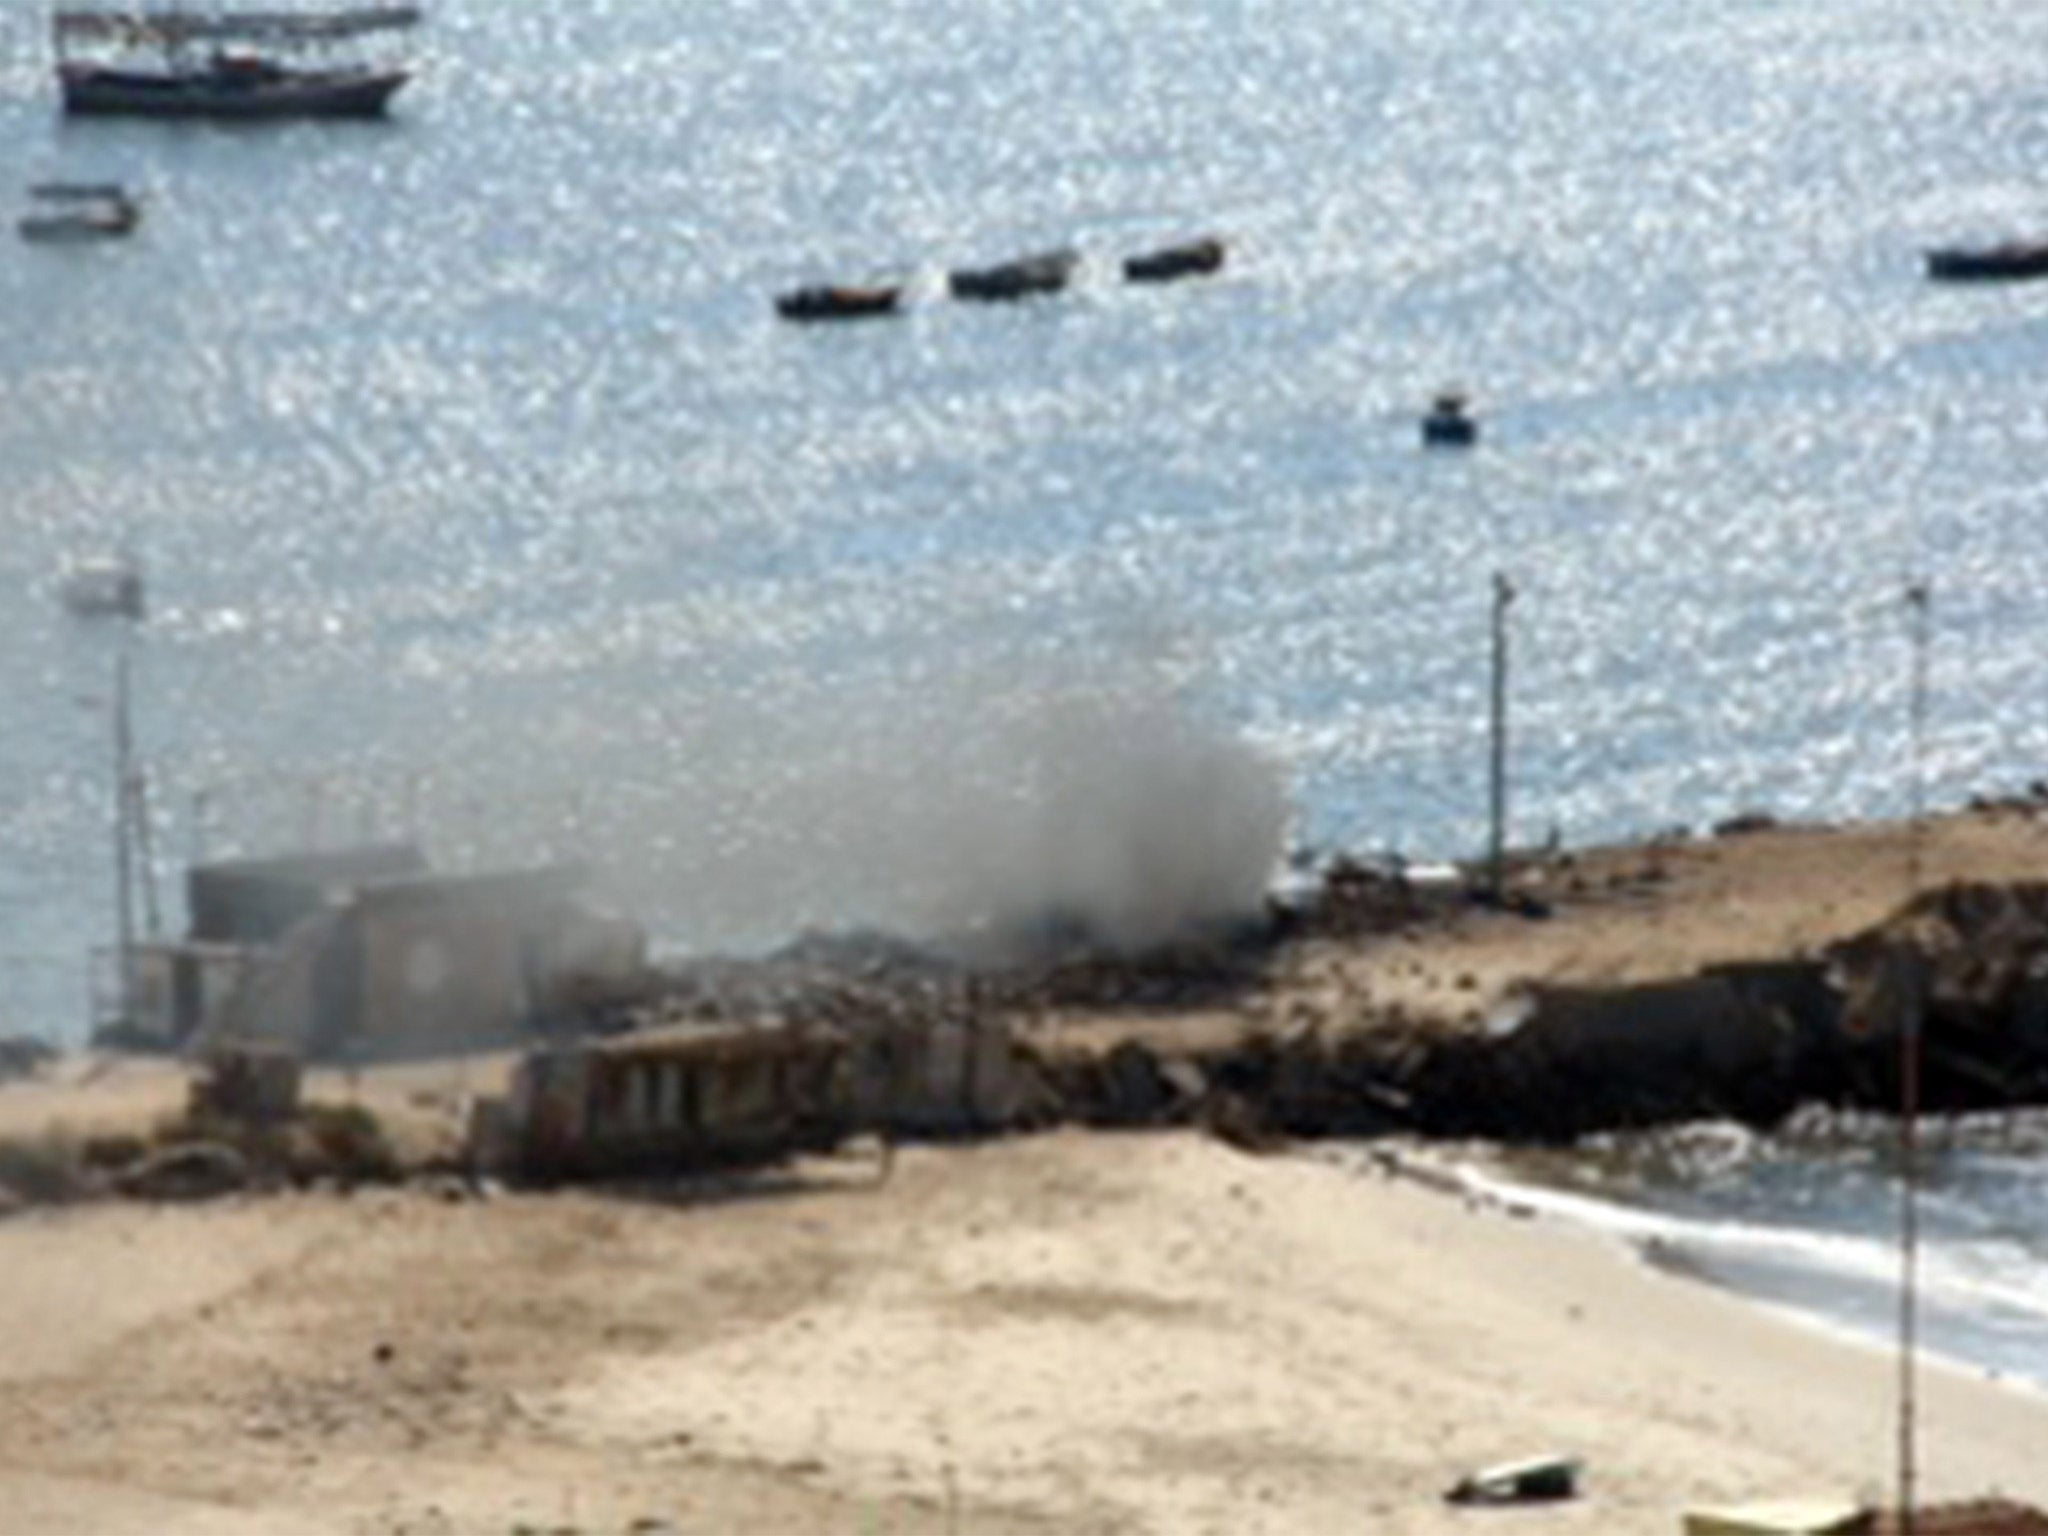 The Israeli air strike on the Bakr boys on the beach in Gaza City